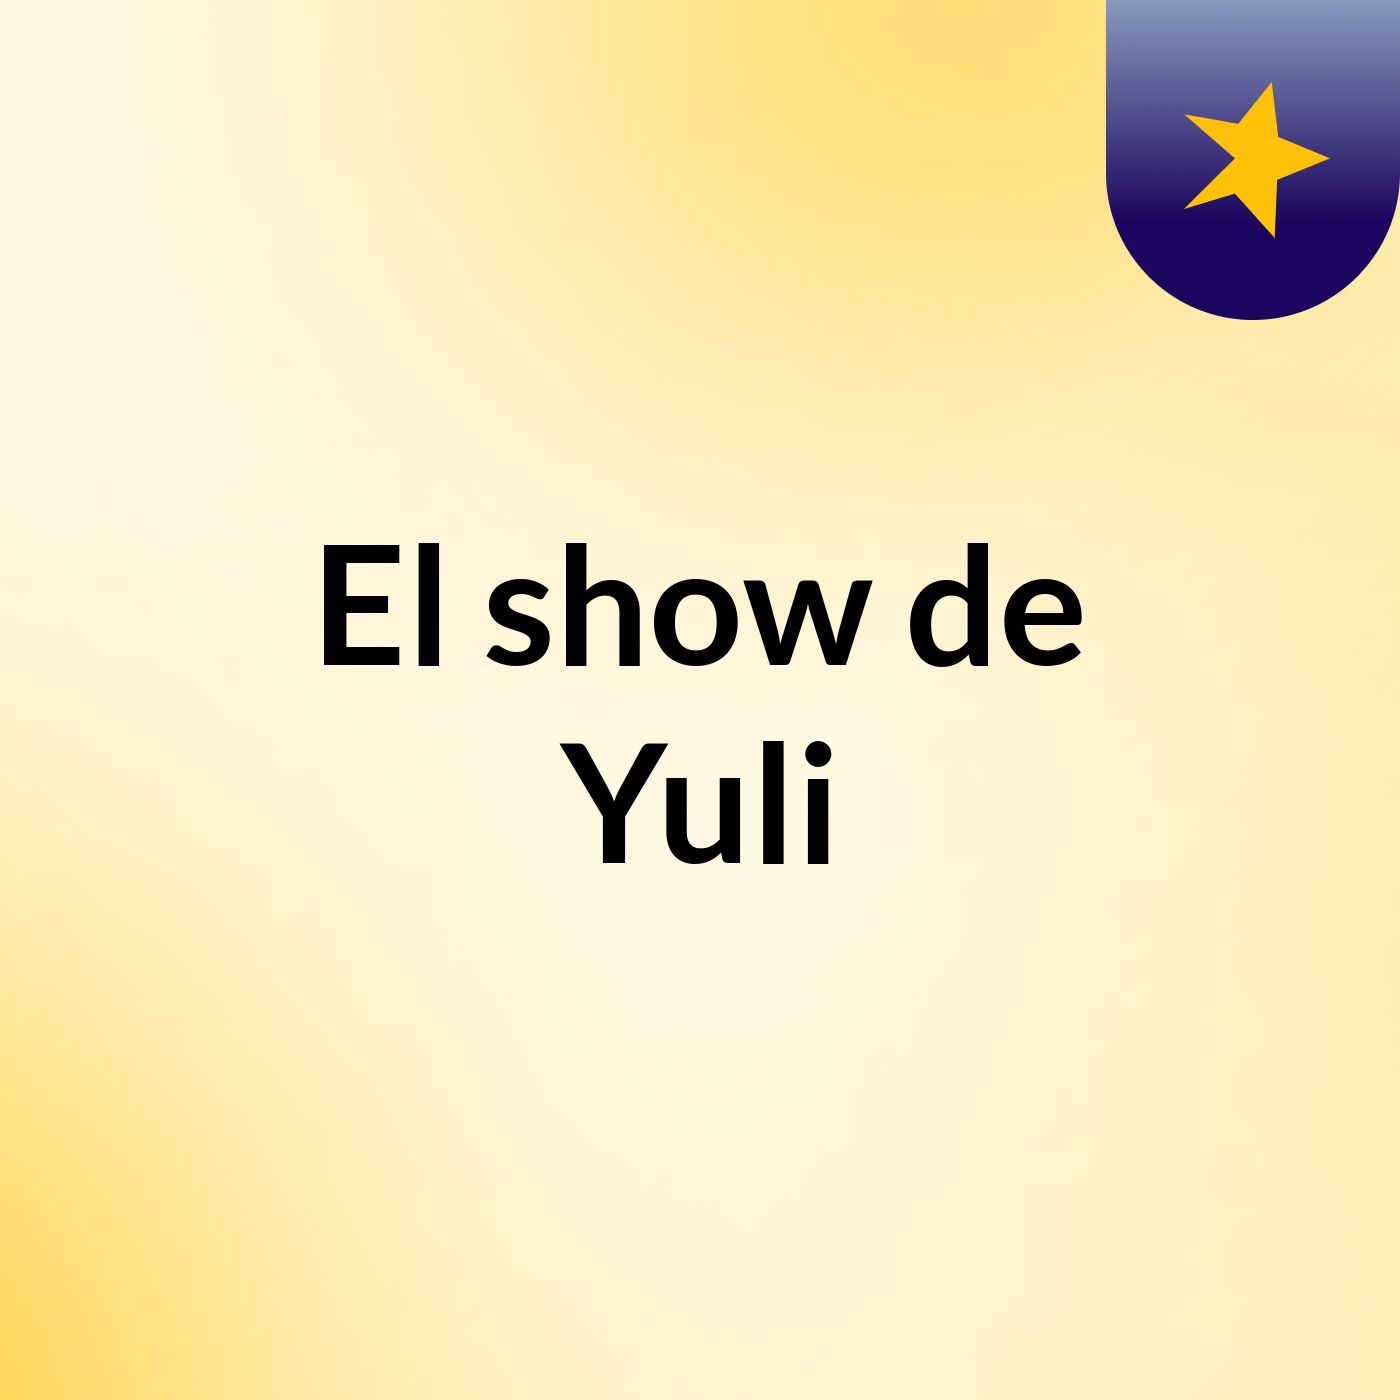 El show de Yuli